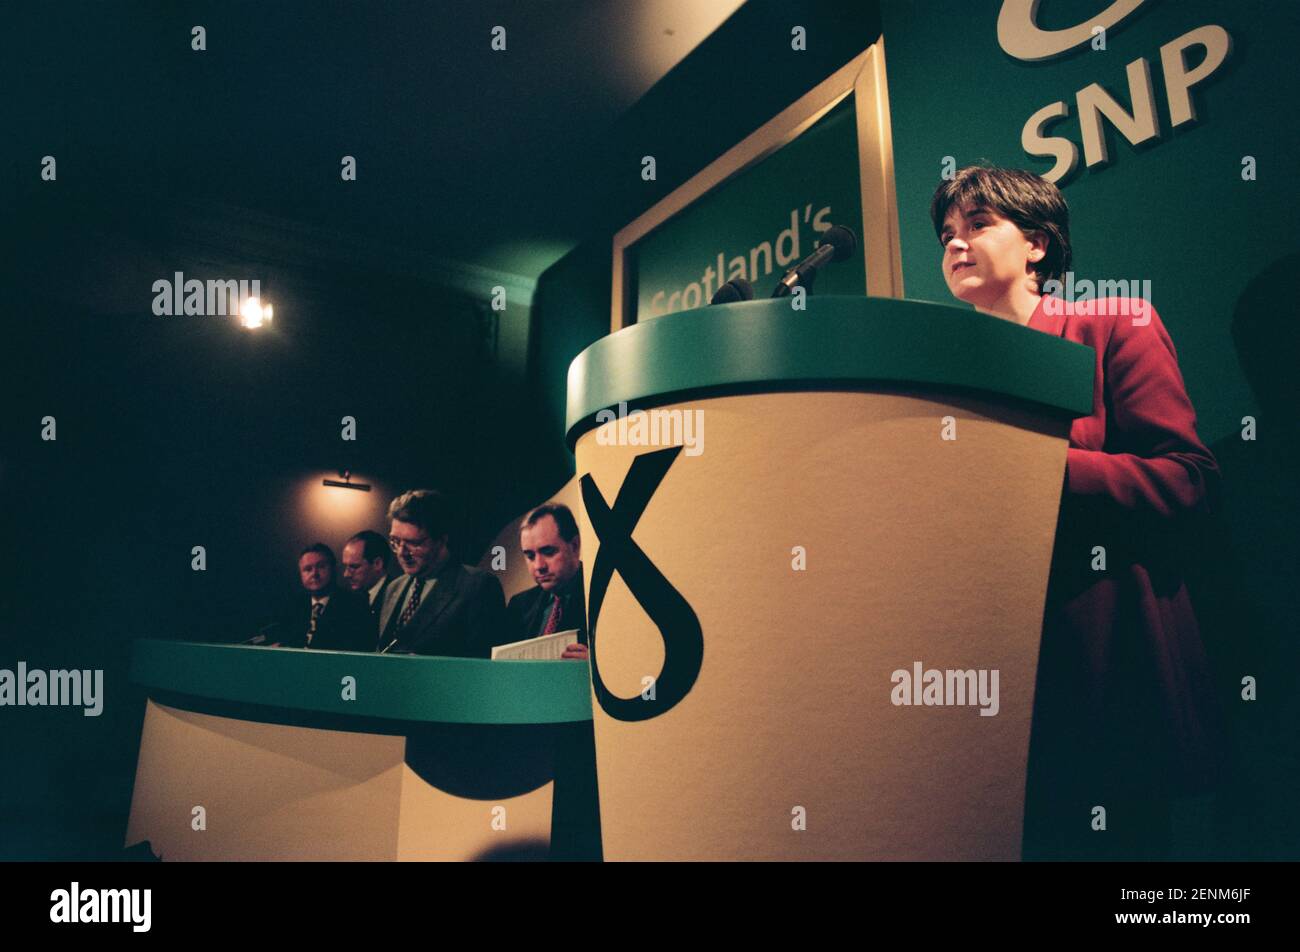 Nicola Sturgeon von der Scottish National Party sprach bei der Veröffentlichung des Manifests der SNP 1999 für den Holyrood-Wahlkampf in Edinburgh, Schottland, mit Parteivorsitzenden auf der rechten Seite. Frau Sturgeon wurde 1999 in das neu geschaffene schottische parlament gewählt und diente anschließend als stellvertretende erste Ministerin des Landes unter Alex Salmond MSP und dann als erste Ministerin. Zur Zeit der Wahl 1999 arbeitete sie als Rechtsanwältin im Drumchapel Law and Money Advice Center in Glasgow. Stockfoto